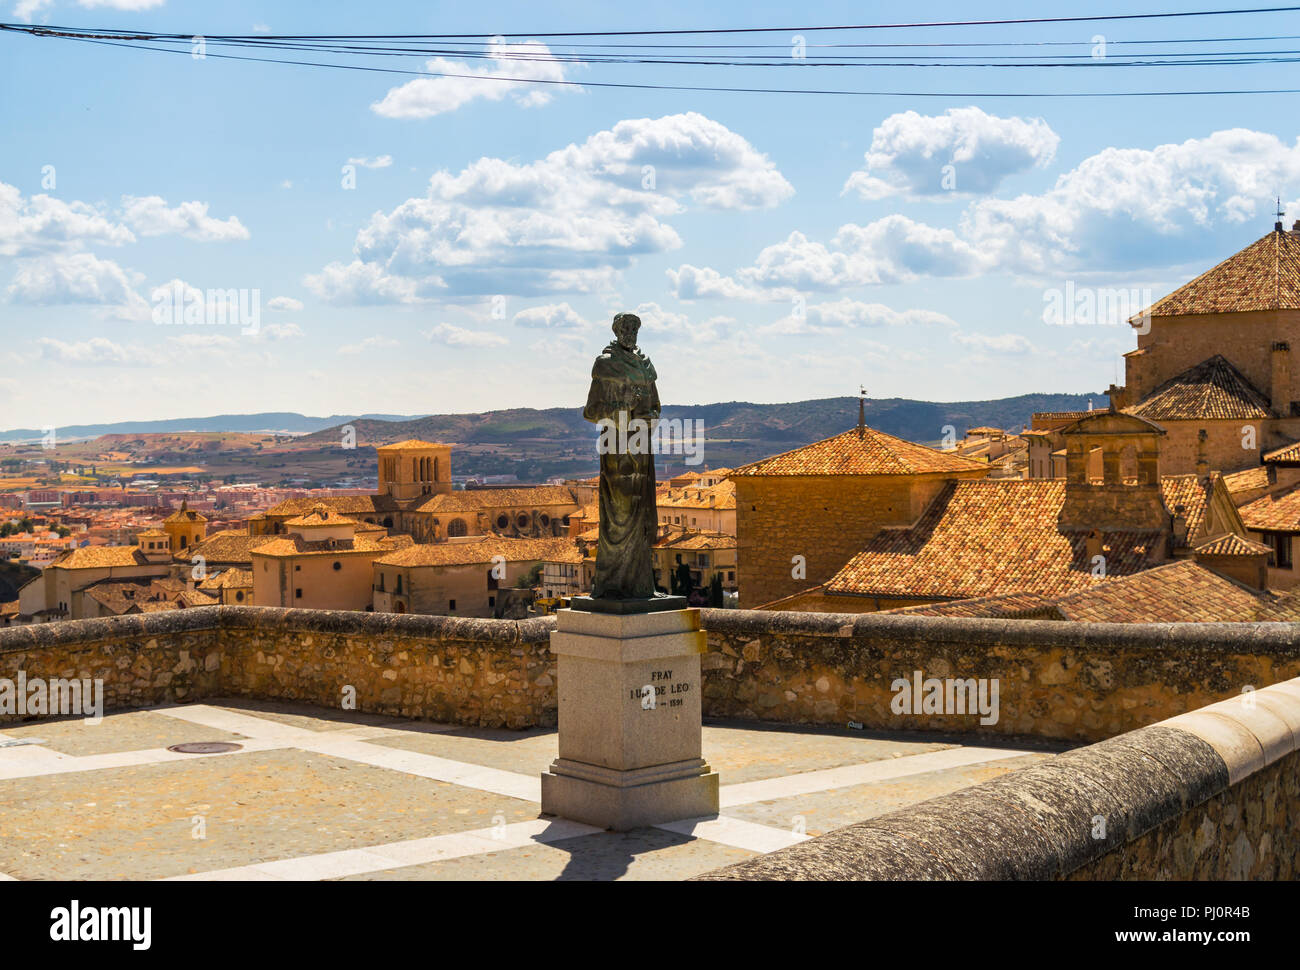 Statua del poeta e i religiosi Fray Luis de Leon nella parte superiore della città vecchia di Cuenca, Spagna. Le case e le montagne sullo sfondo. Foto Stock